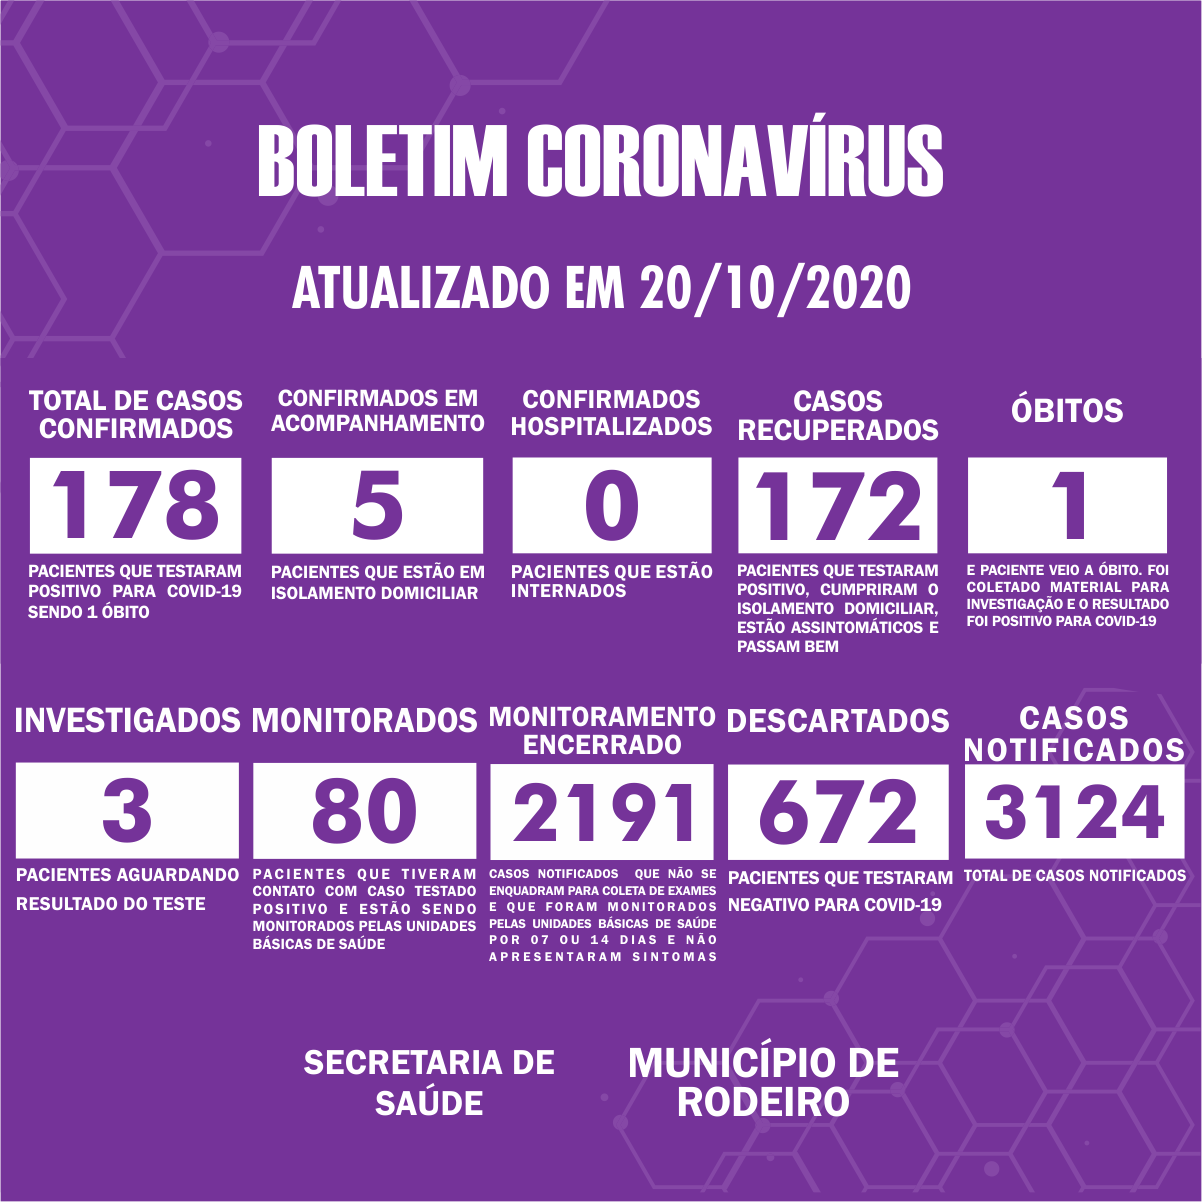 Boletim Epidemiológico do Município de Rodeiro sobre coronavírus, atualizado em 20/10/2020